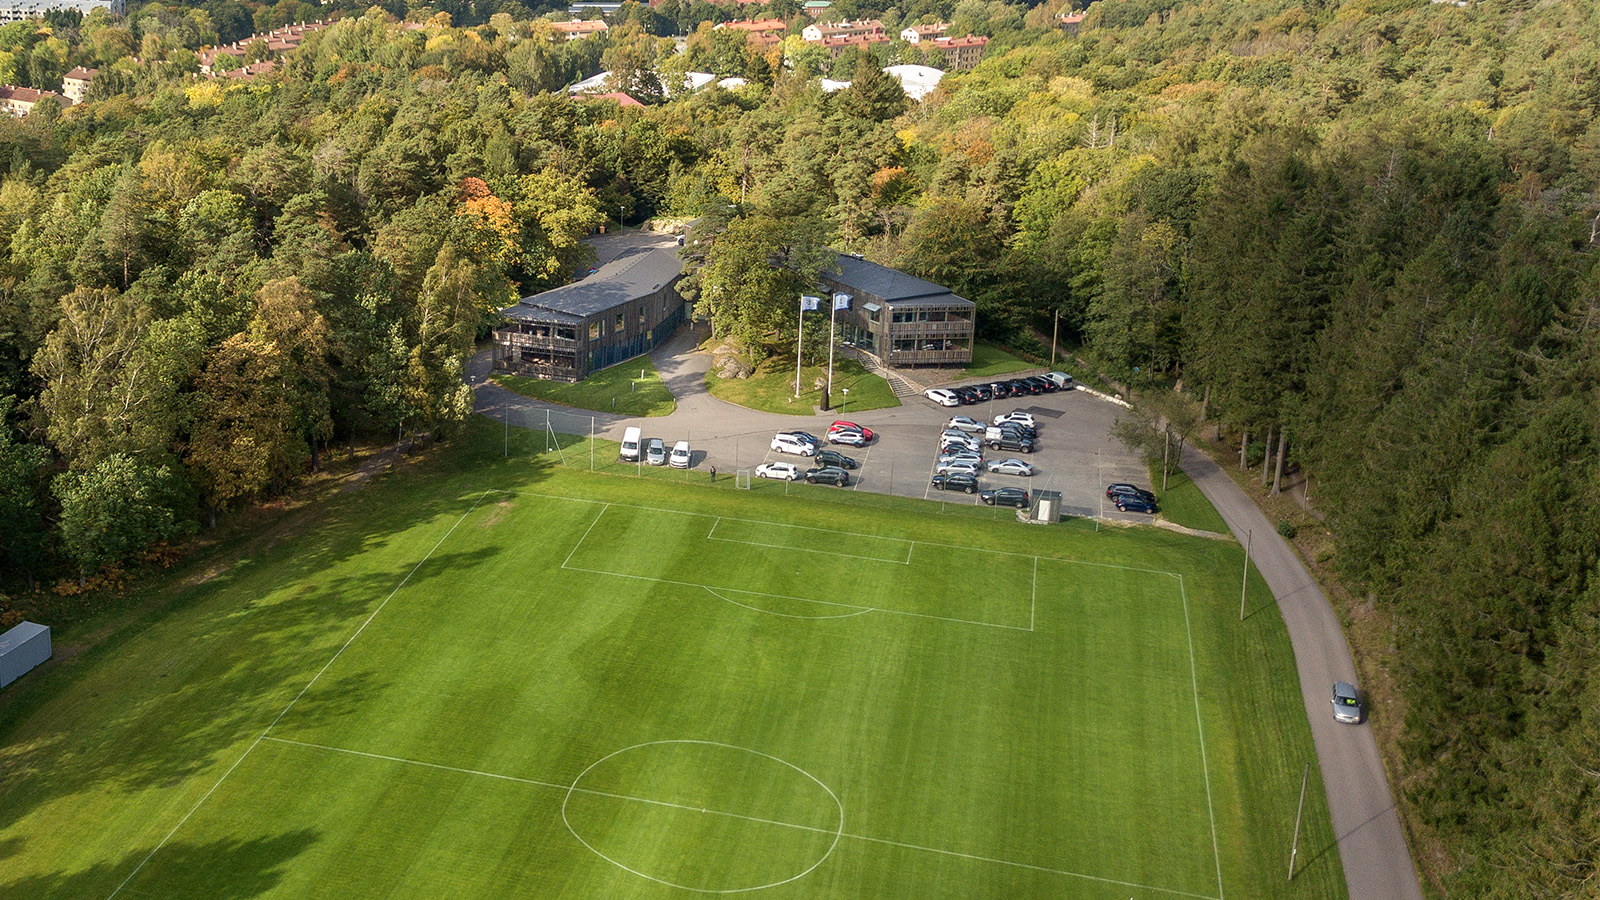 IFK Göteborg: Sommarlovscamp för flickor på Kamratgården